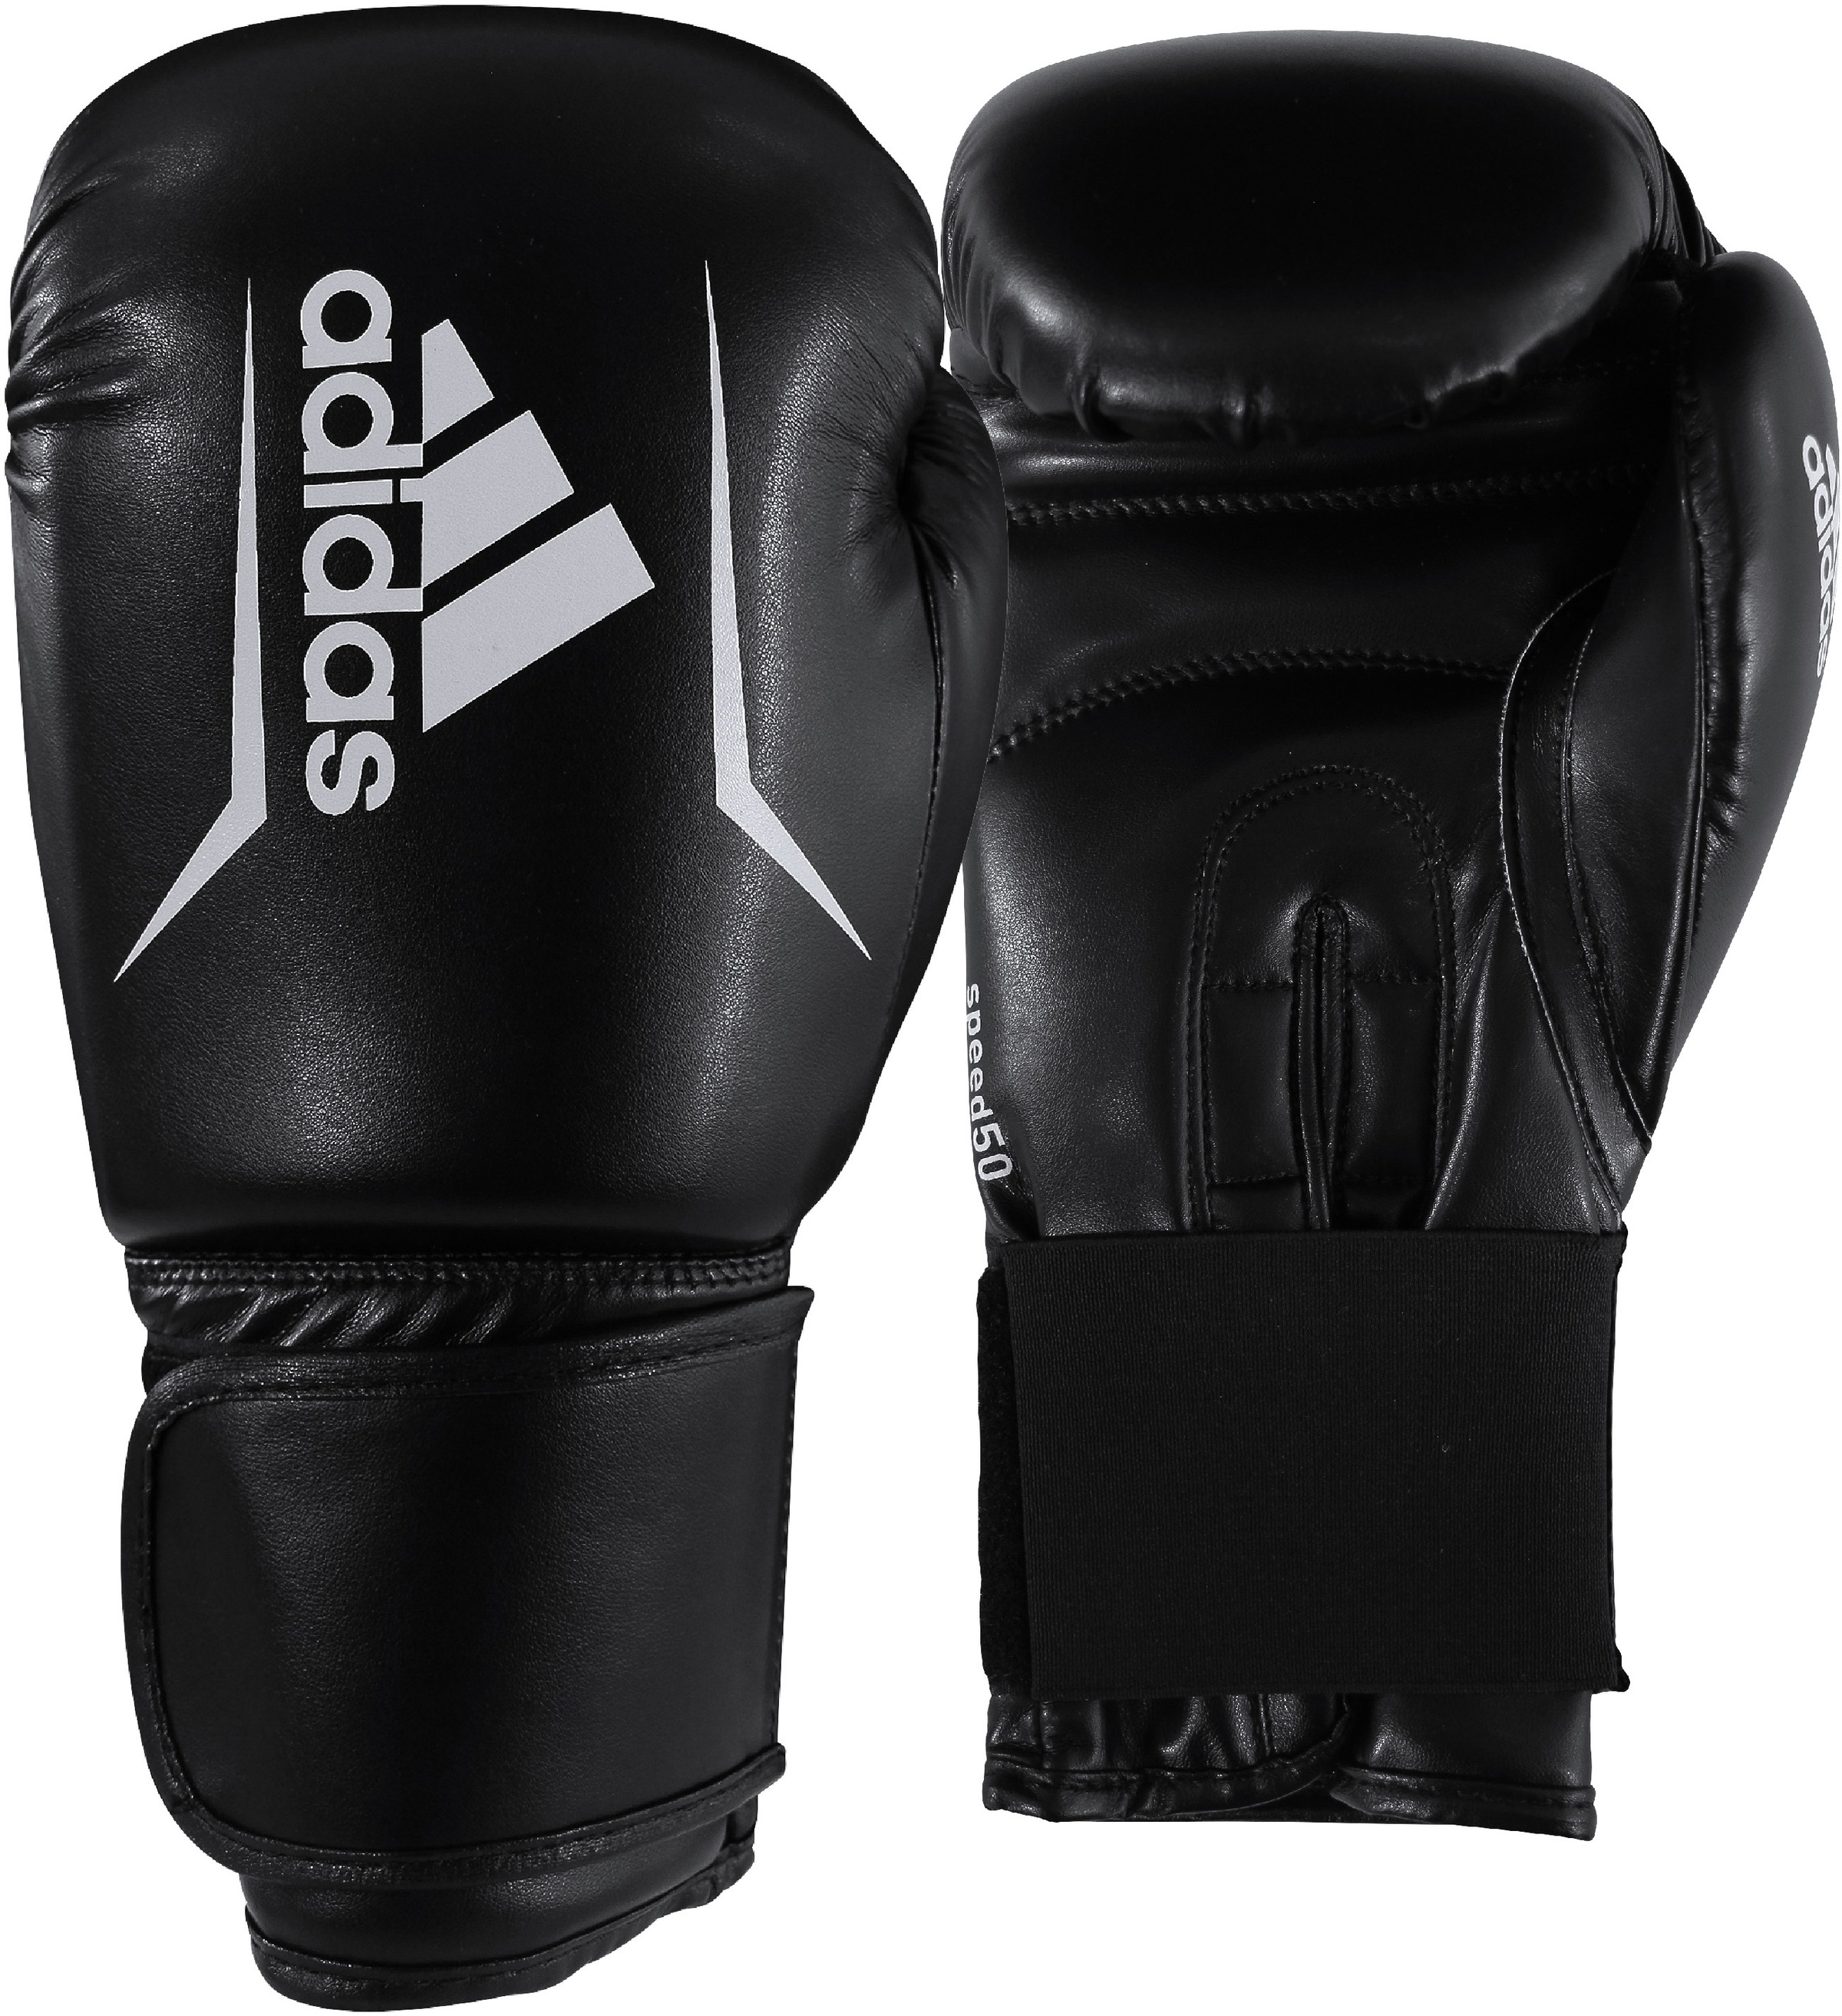 adidas Performance Boxhandschuhe »Boxing Kit«, (Set, 3 tlg.) | BAUR